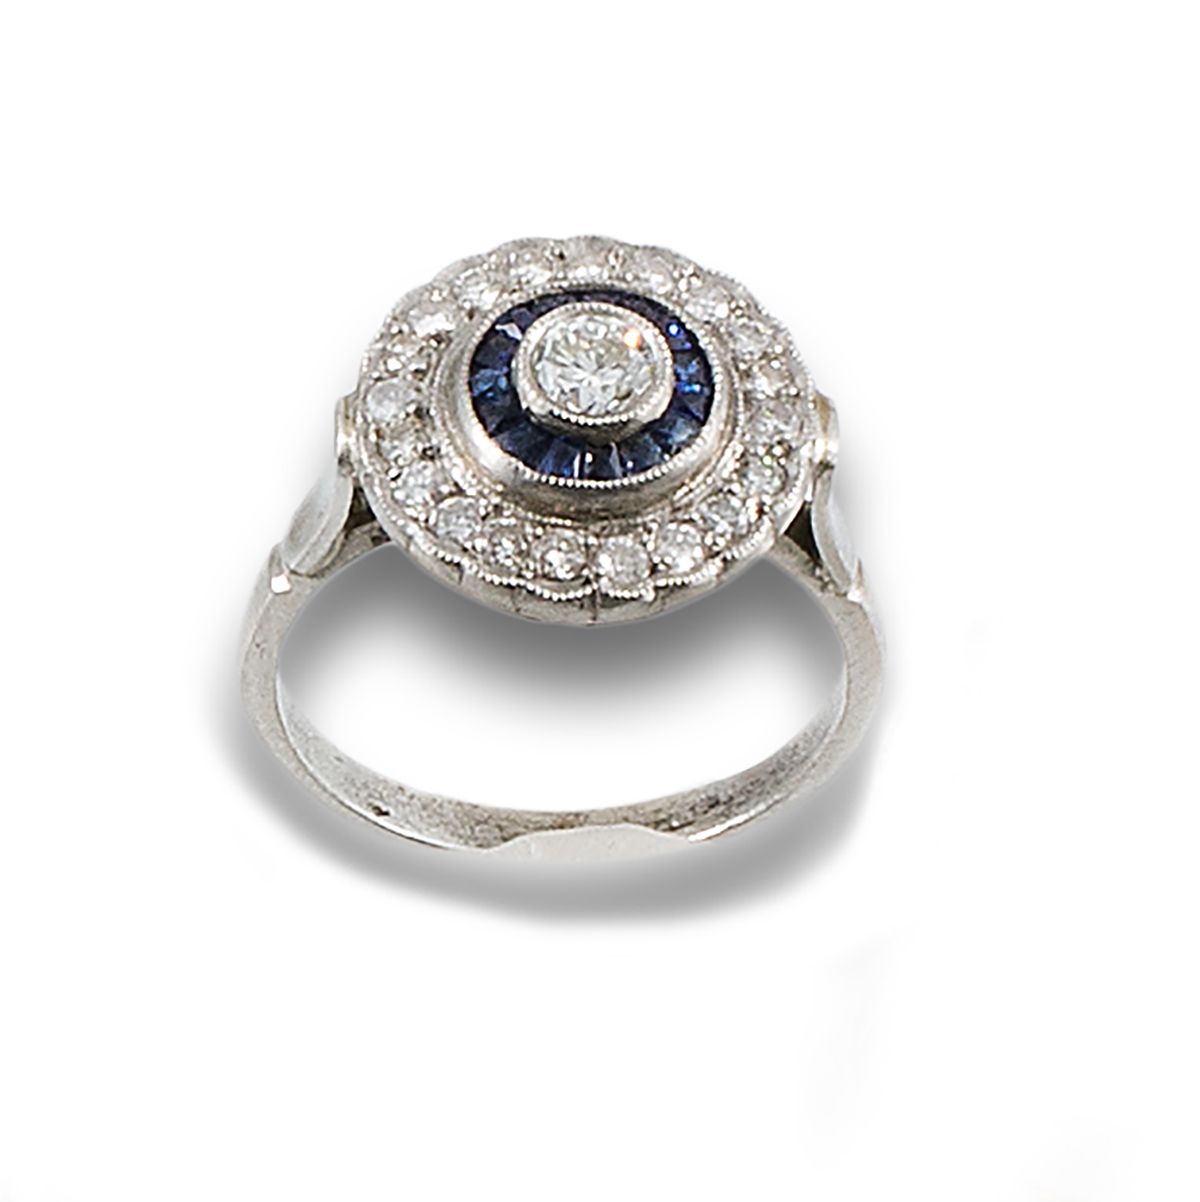 Platinum bird's eye ring. Gebildet aus einem zentralen Diamanten im Brillantschl&hellip;